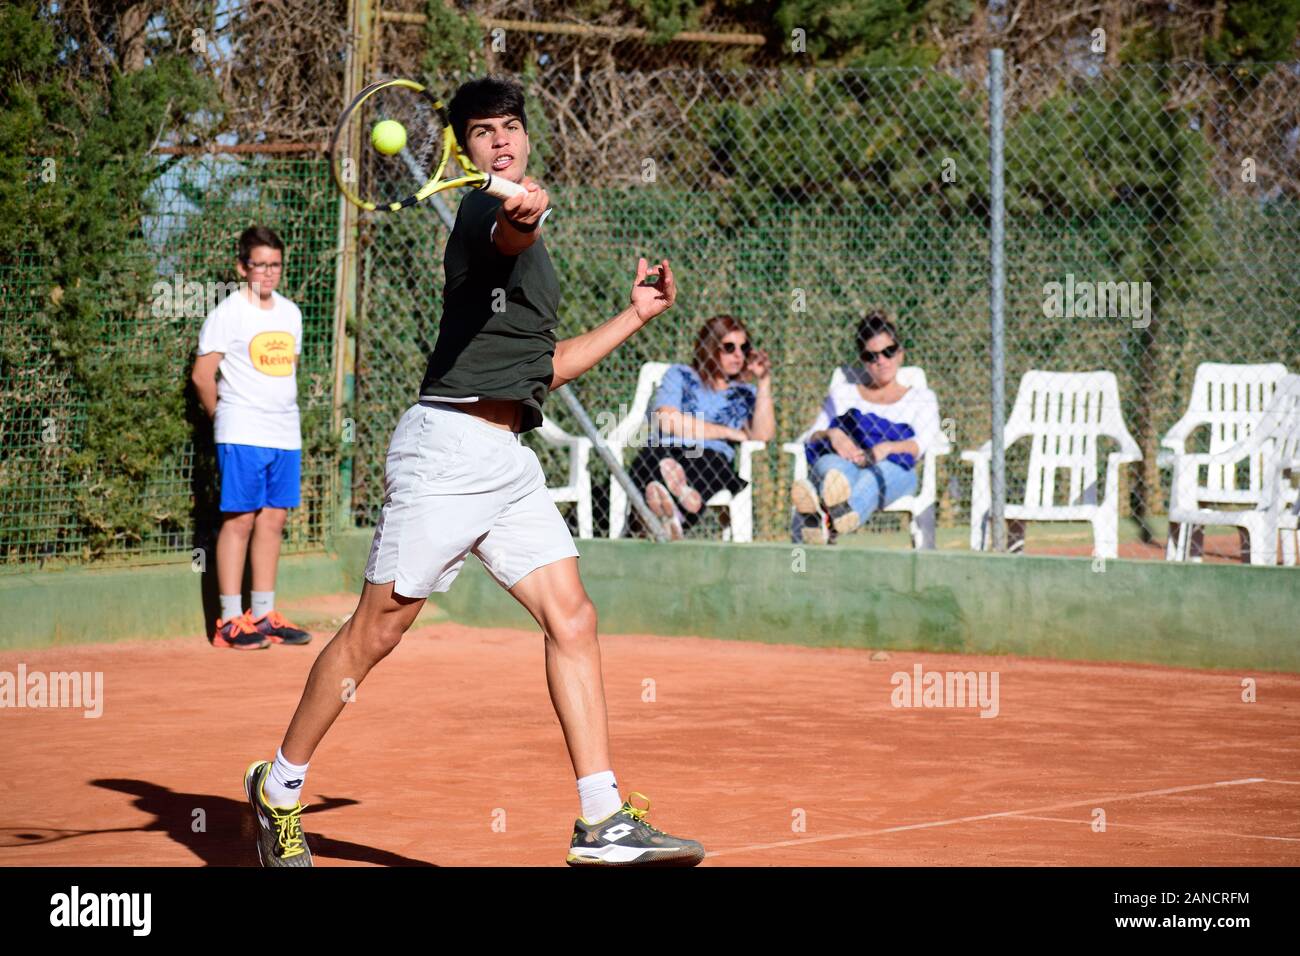 Murcia, Spanien, 26. Dezember 2019: Carlos Alcaraz Garfía spanischer Tennisspieler, der sich auf einem Sandplatz auf ein Tennismatch vorbereitet. Stockfoto